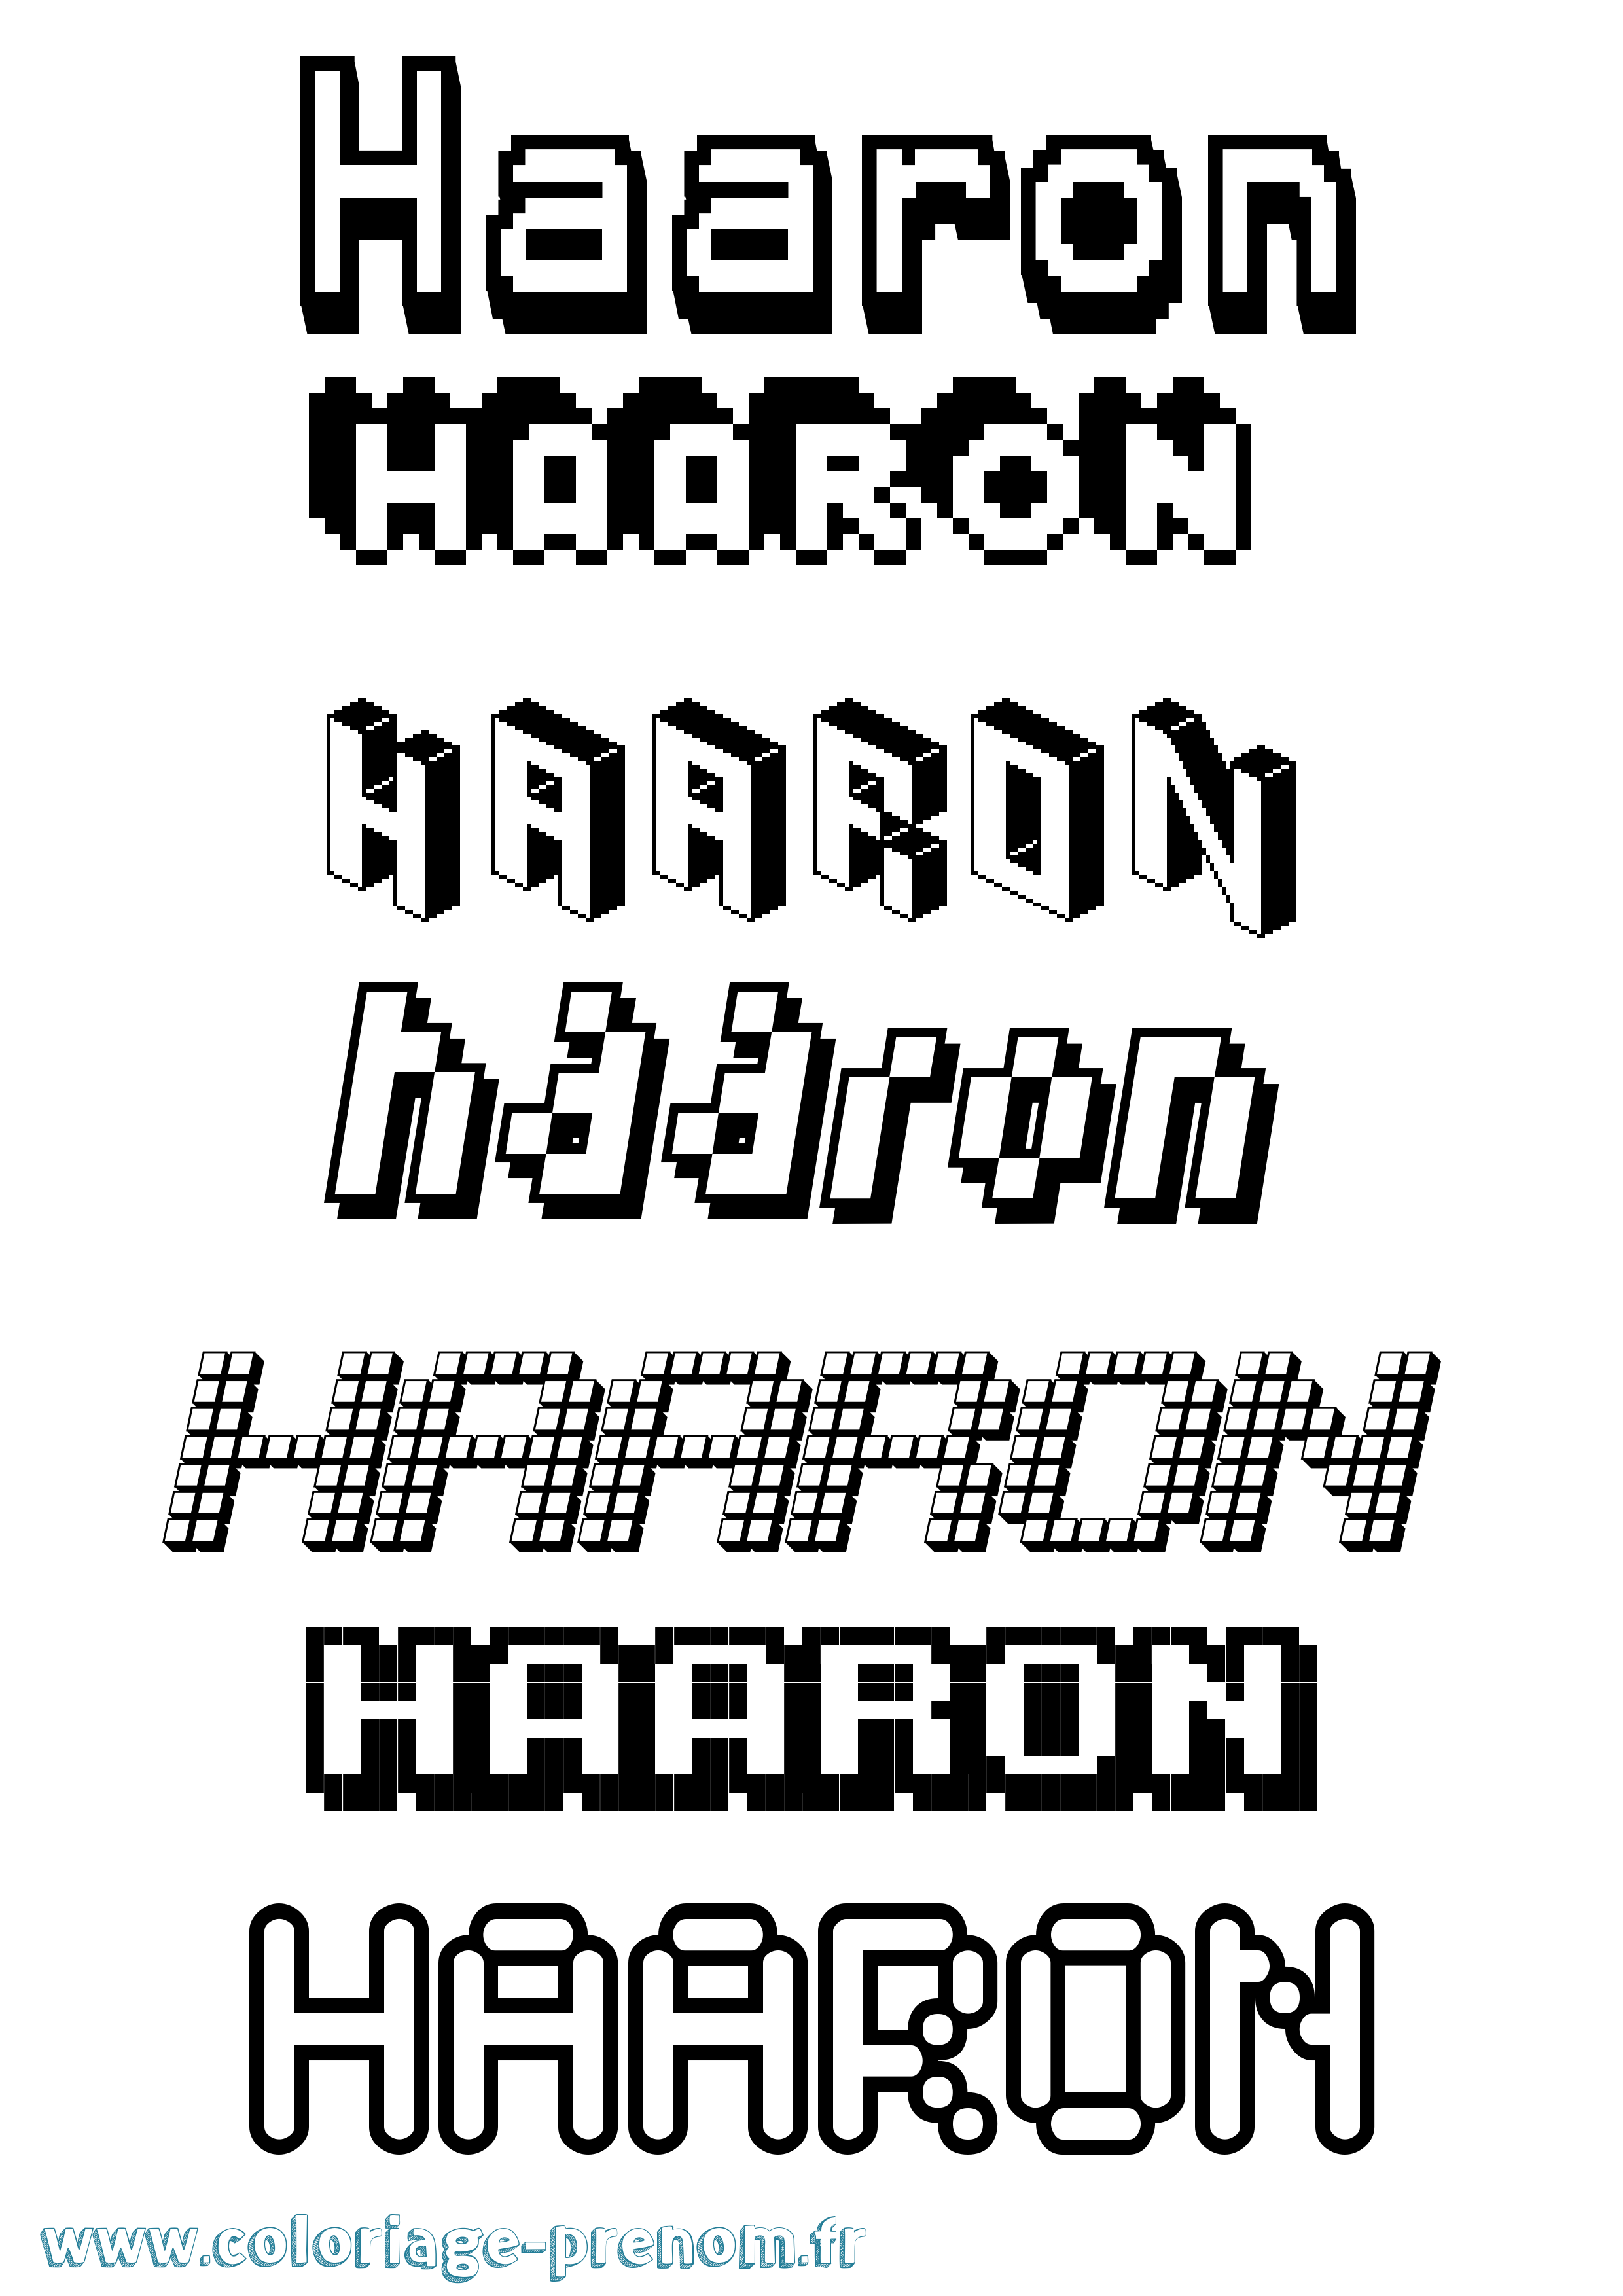 Coloriage prénom Haaron Pixel